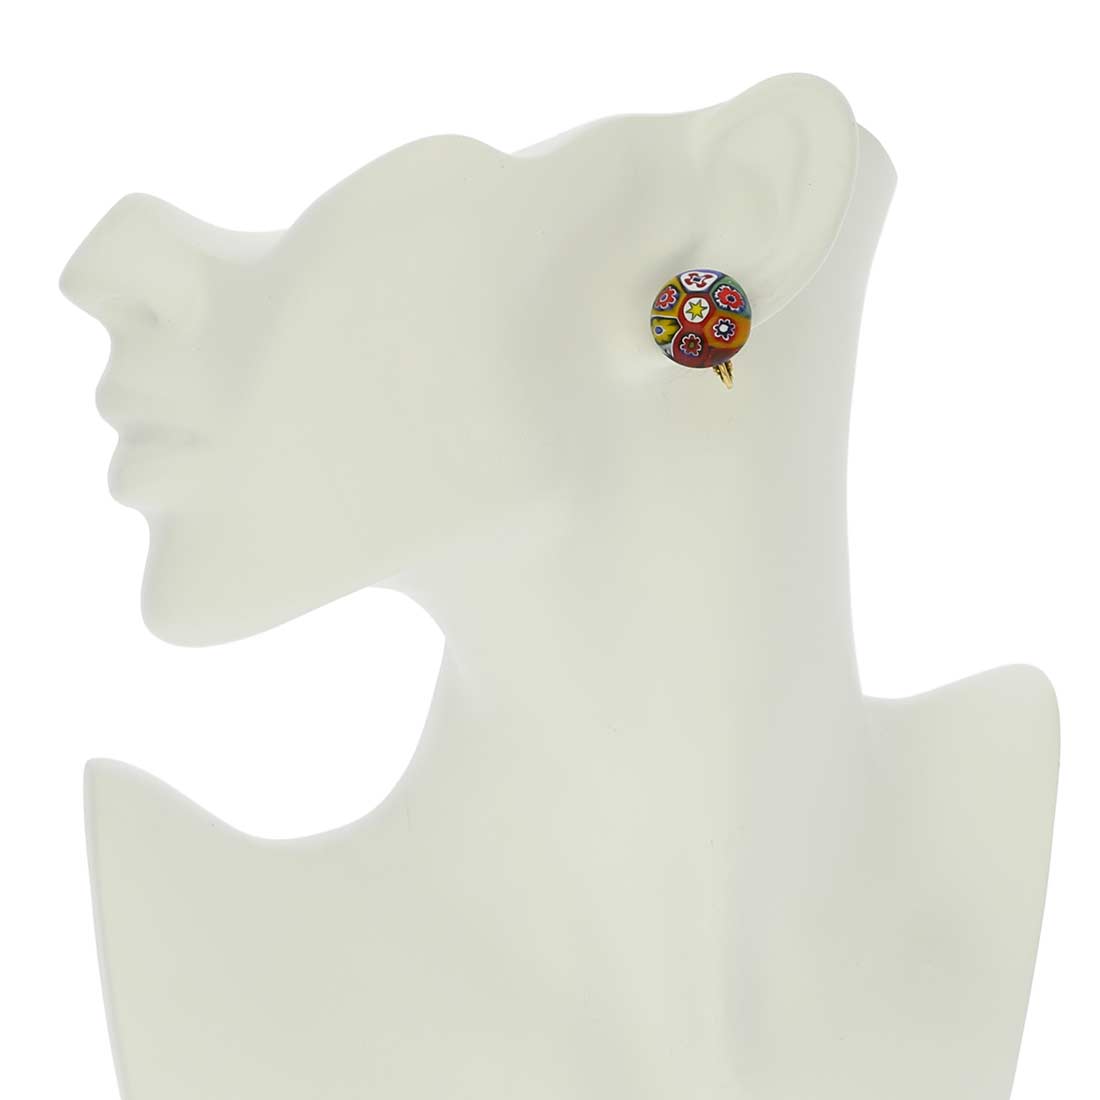 Color Splash Millefiori Clip Earrings - Multicolor